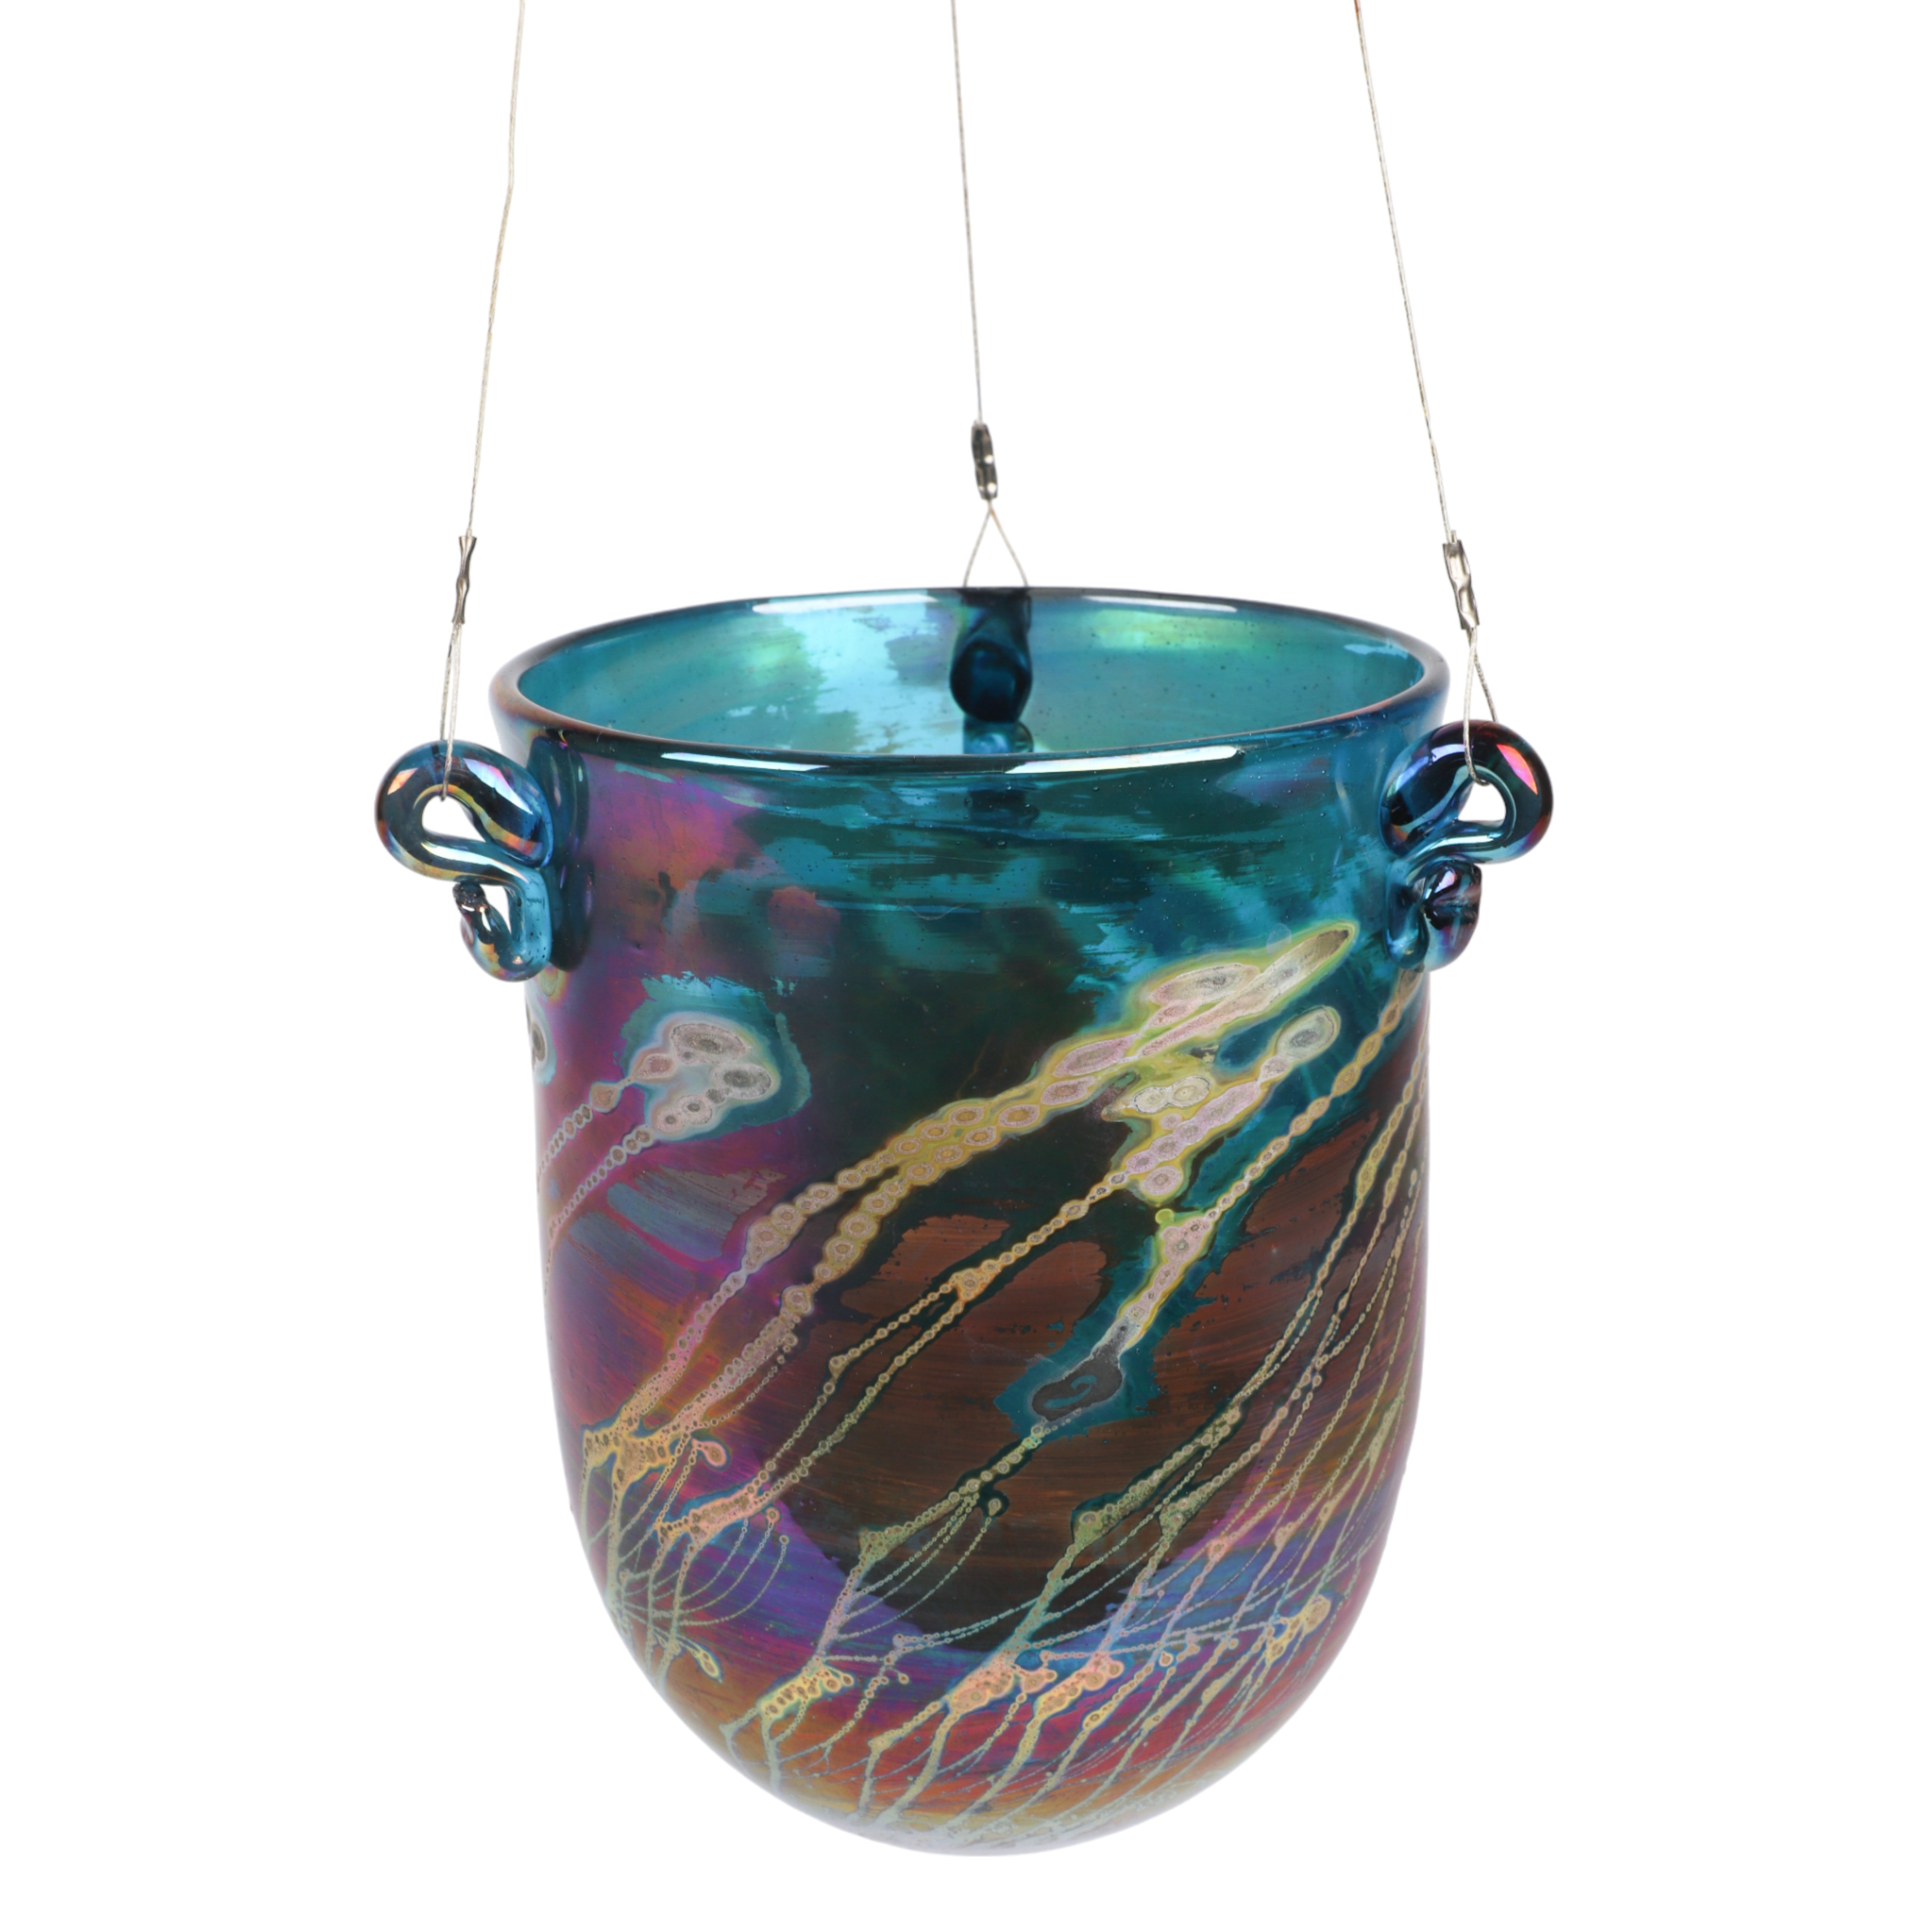 Robert Coleman art glass suspended 3ca617